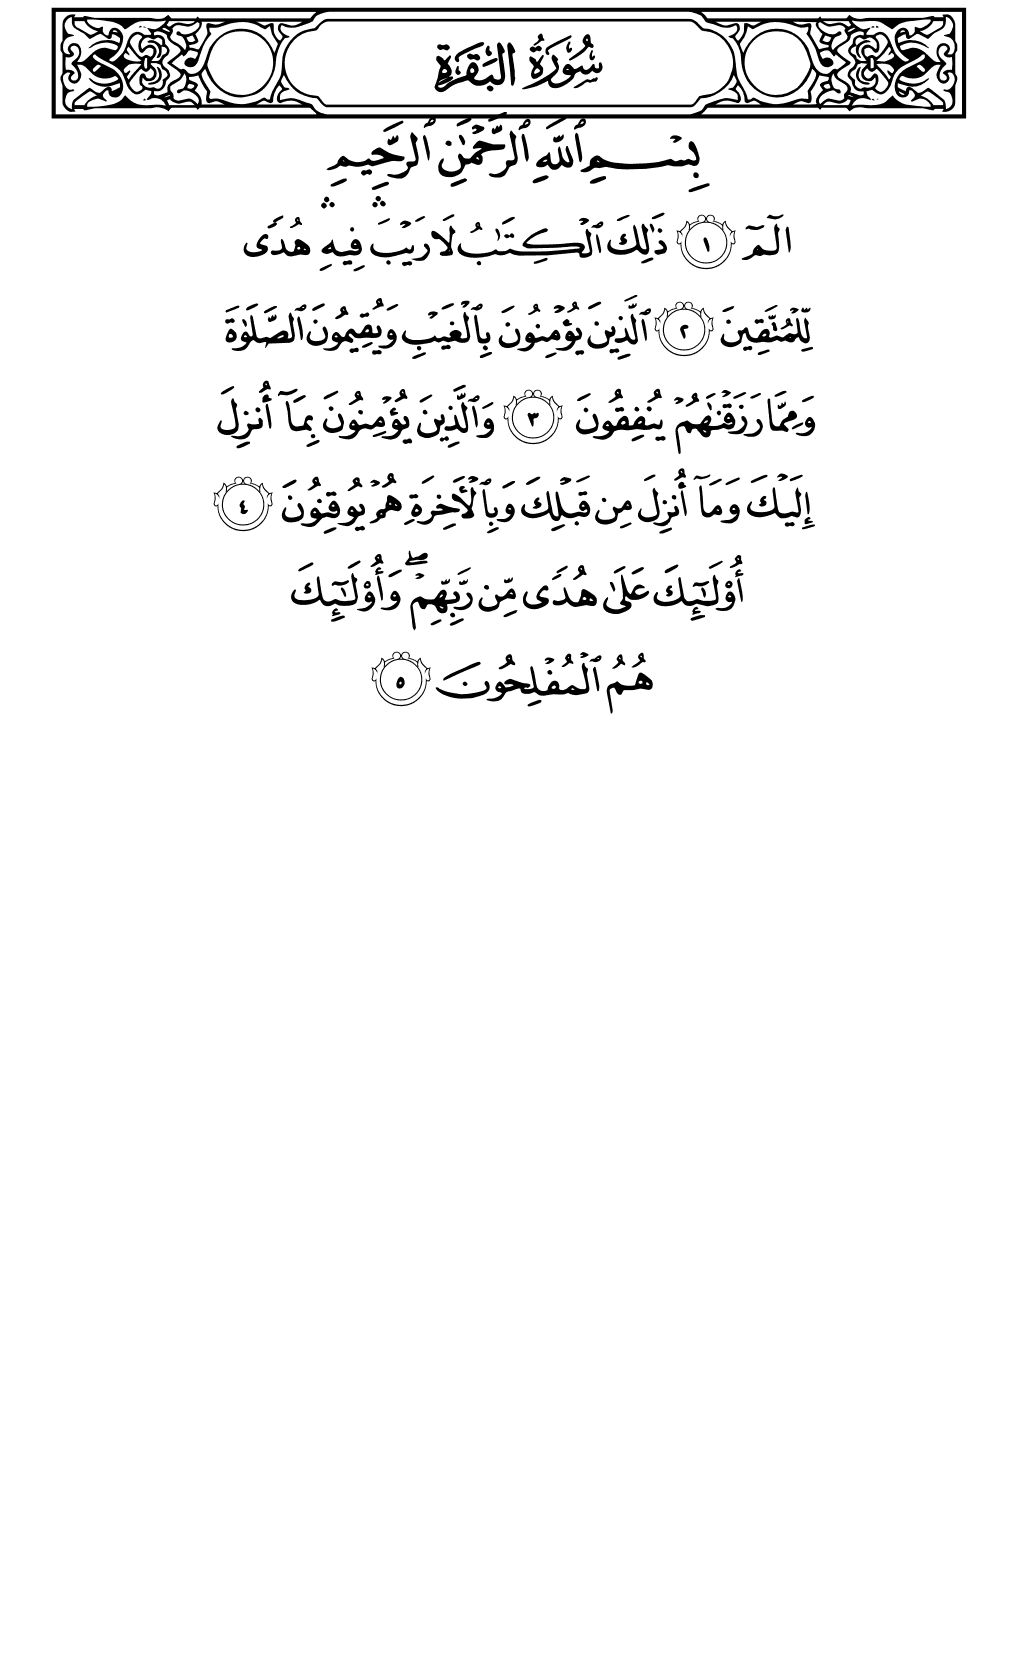 الصفحة رقم 2 من القرآن الكريم